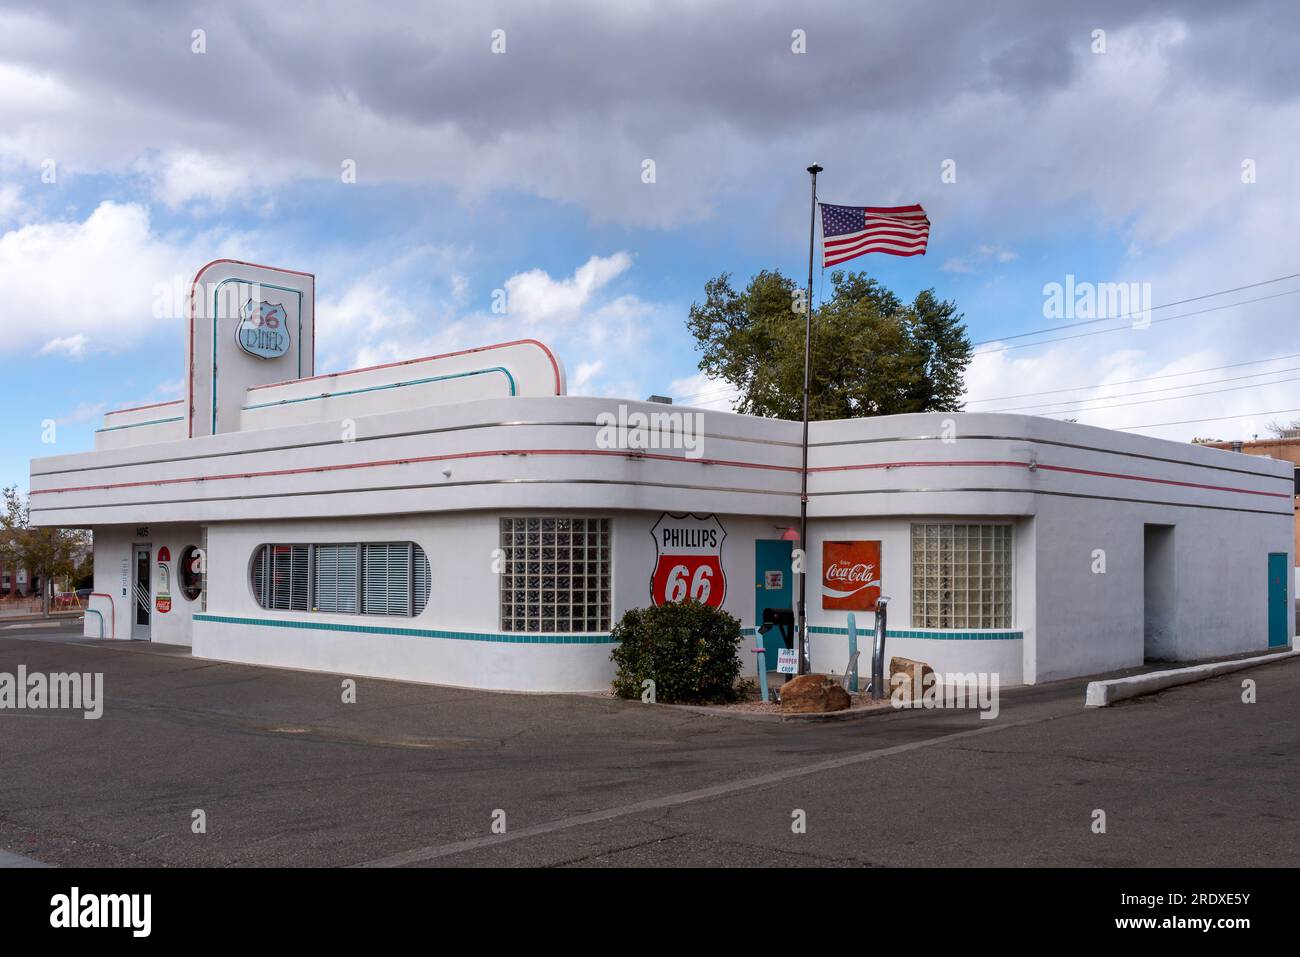 66 Diner, ein Restaurant im Stil der 50er Jahre an der Route 66, The Mother Road, Central Avenue, in Albuquerque, New Mexico, USA. Stockfoto